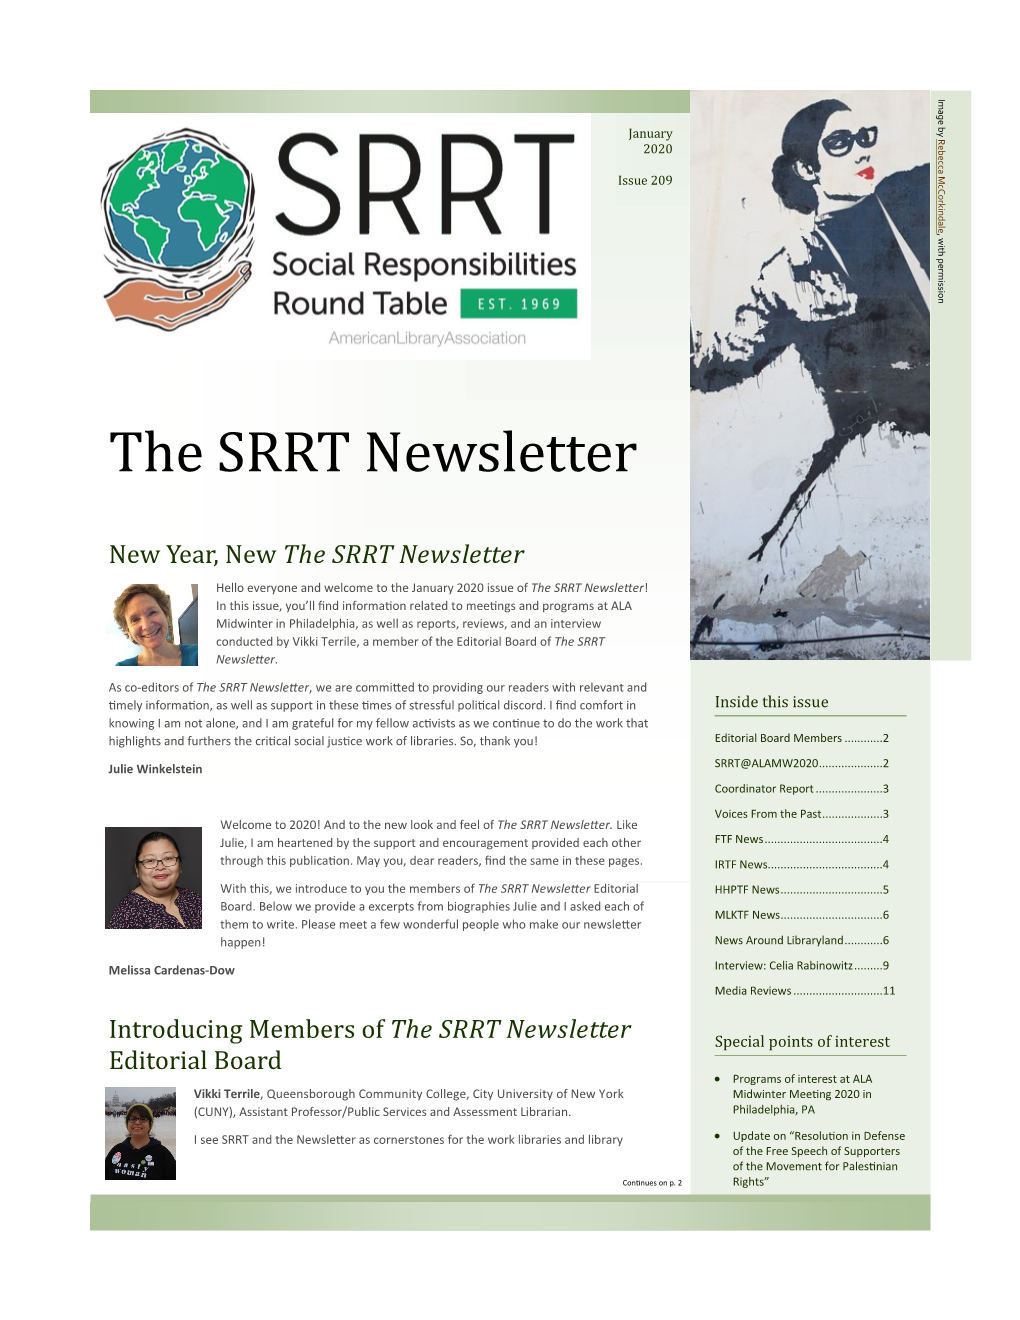 The SRRT Newsletter